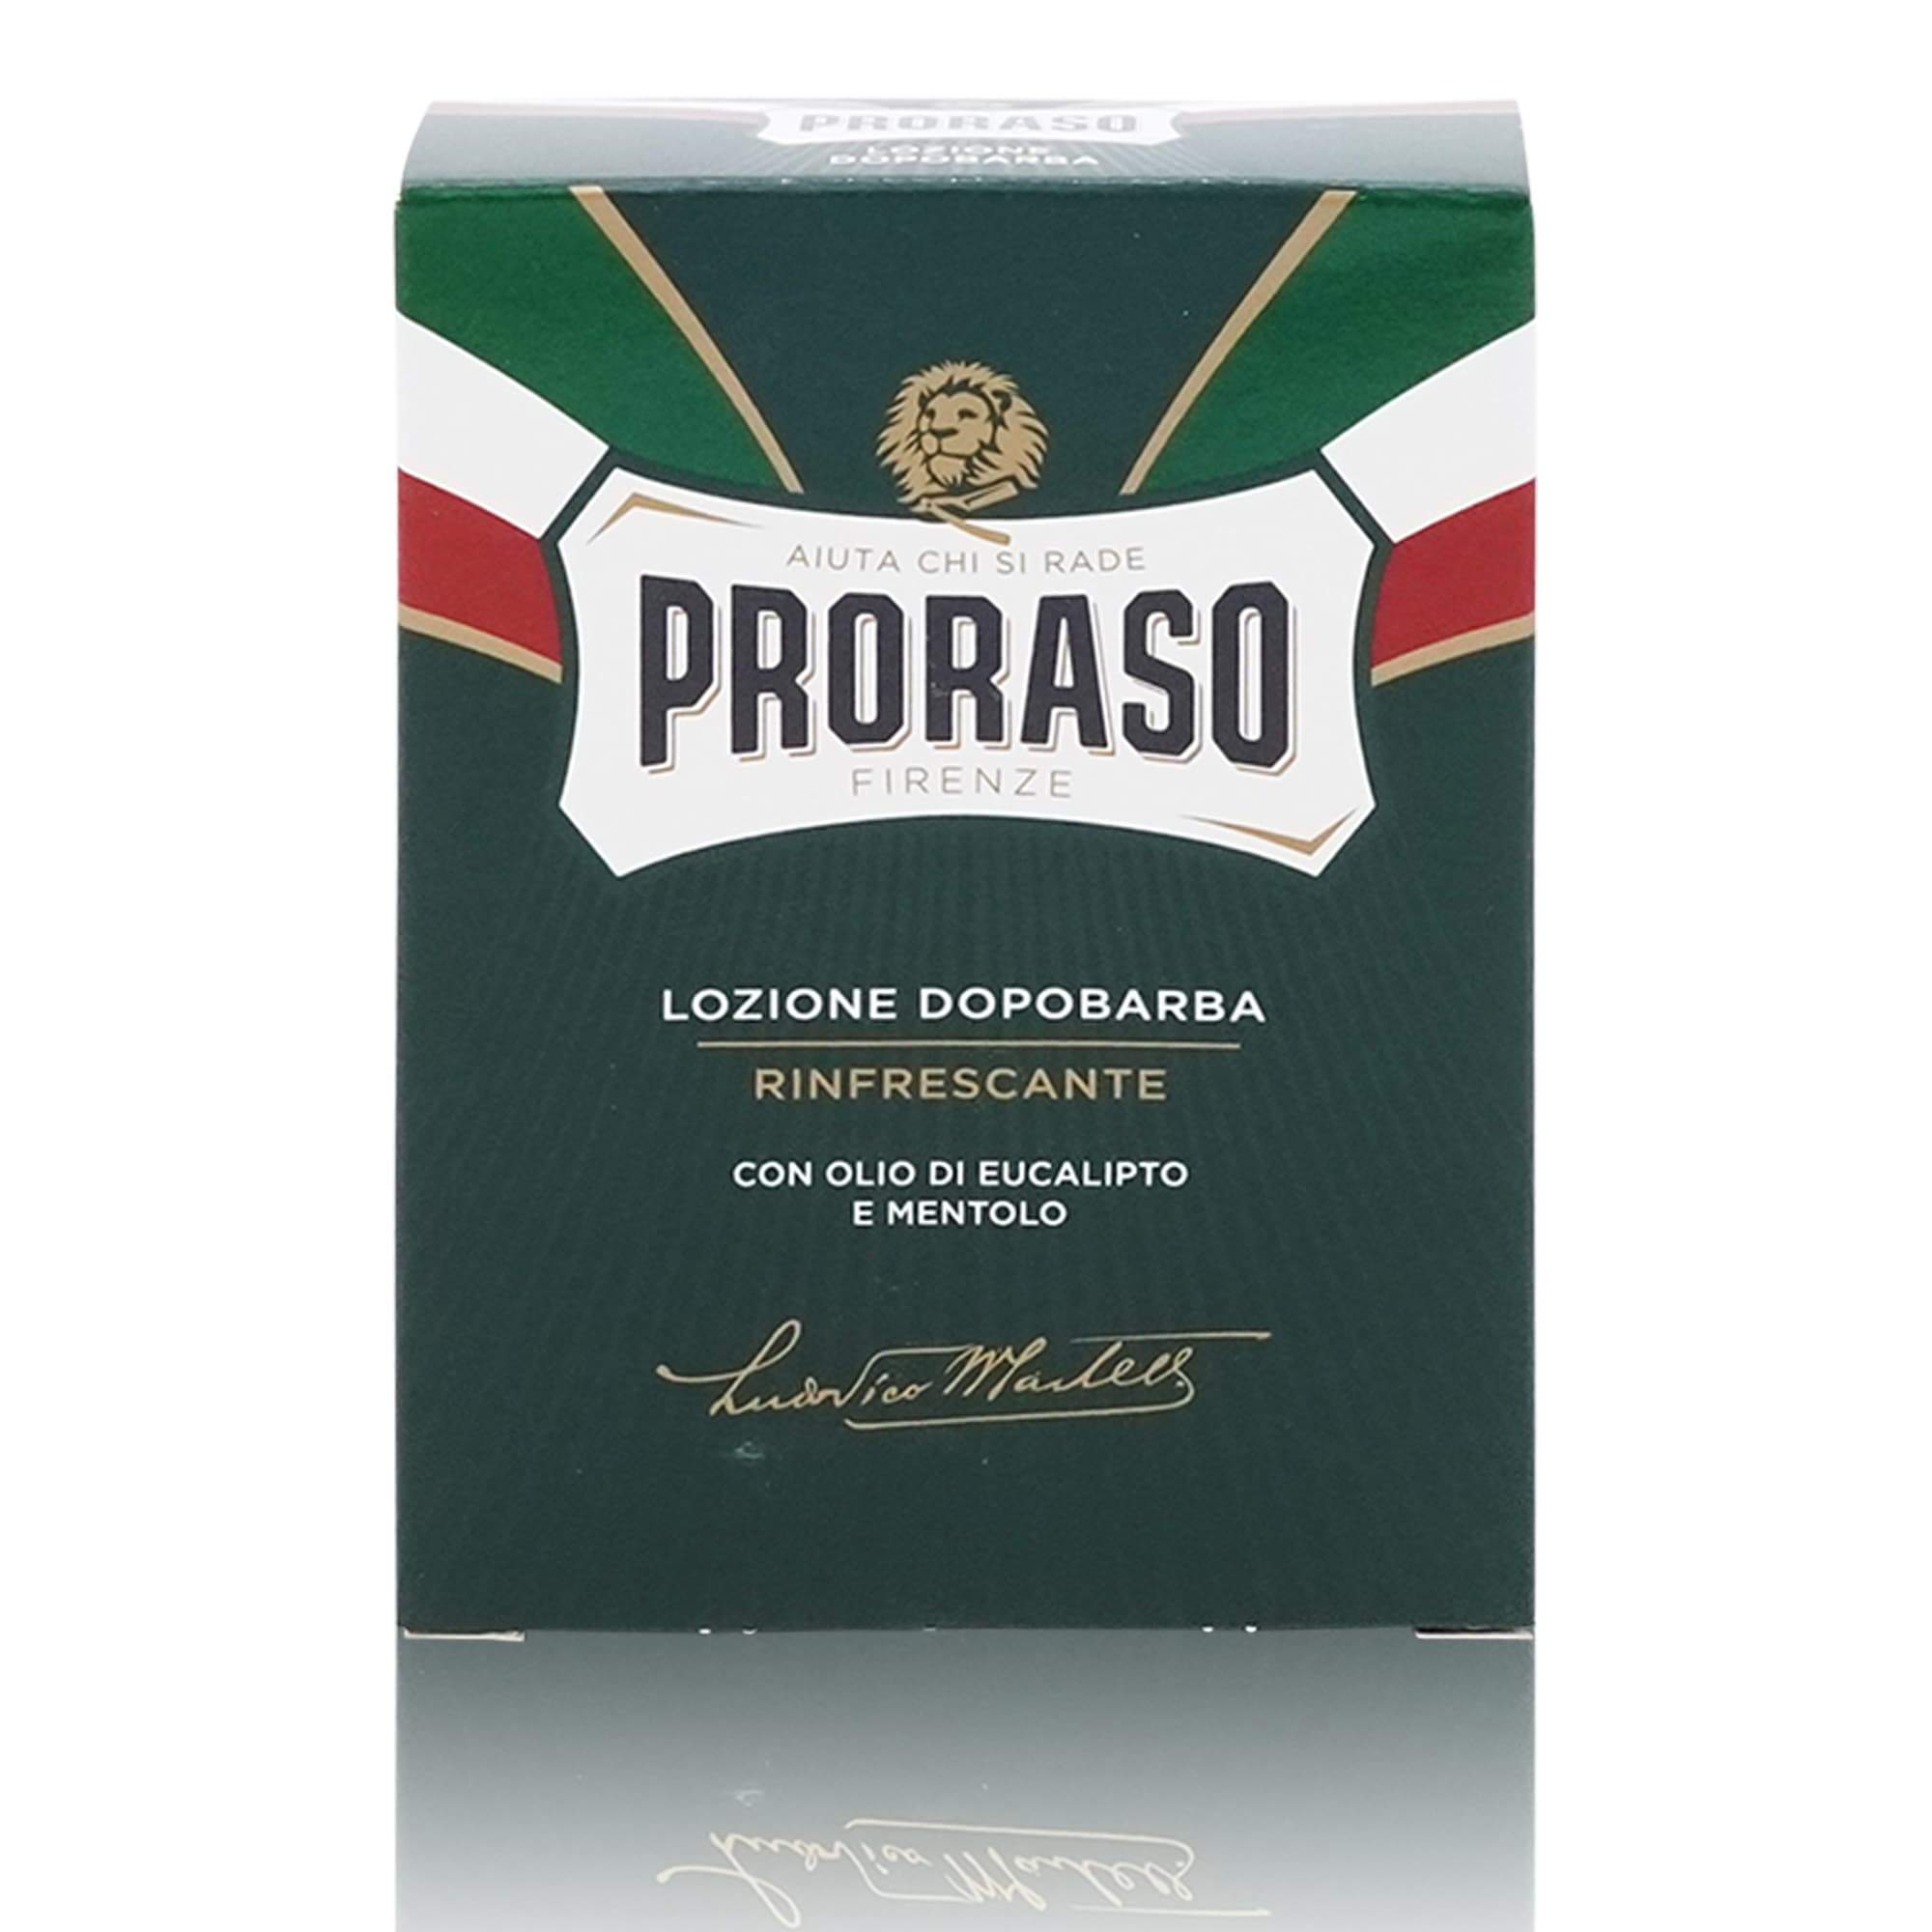 PRORASO Lozione Dopobarba – Aftershave Rasierwasser - 0,100l